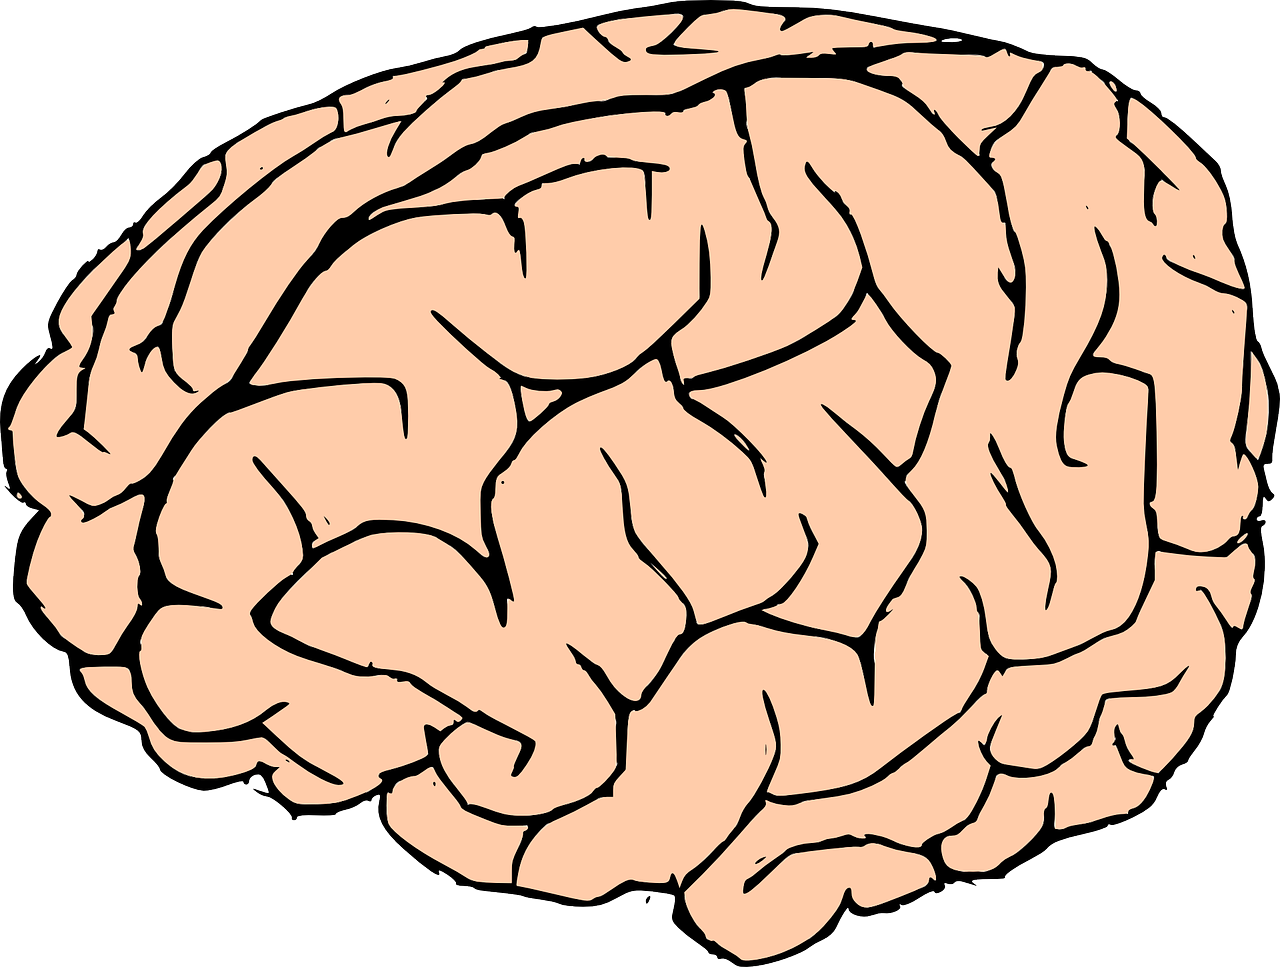 Smegenys, Žmogaus Smegenys, Žinios, Anatomija, Biologija, Organas, Žmogus, Mąstymas, Neuronai, Sinapsės